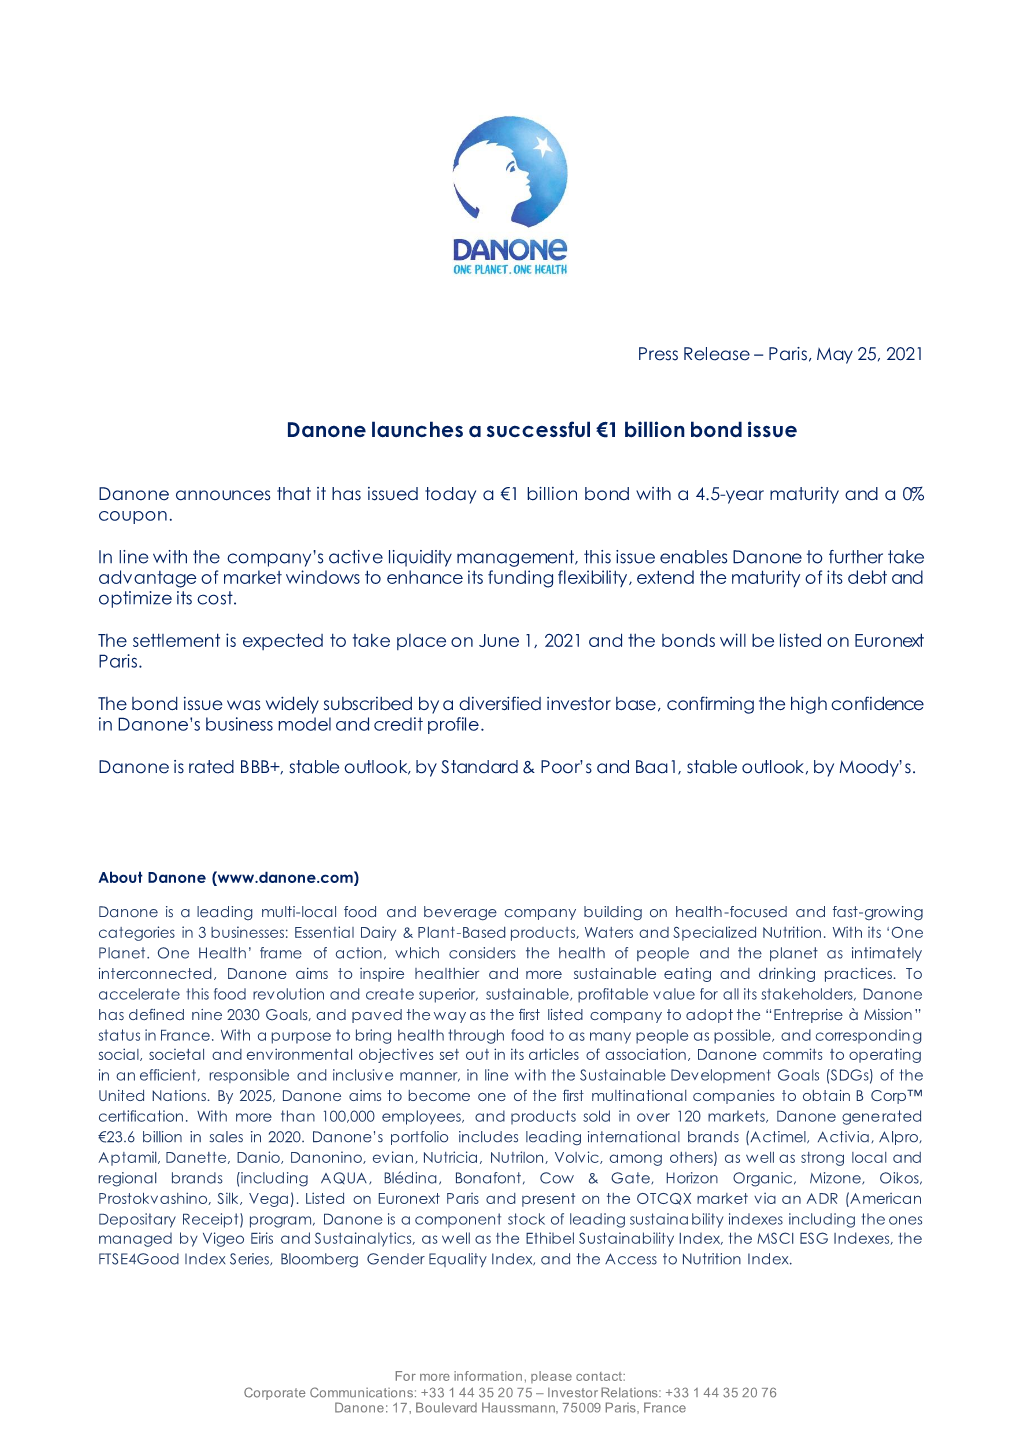 Danone Launches a Successful €1 Billion Bond Issue